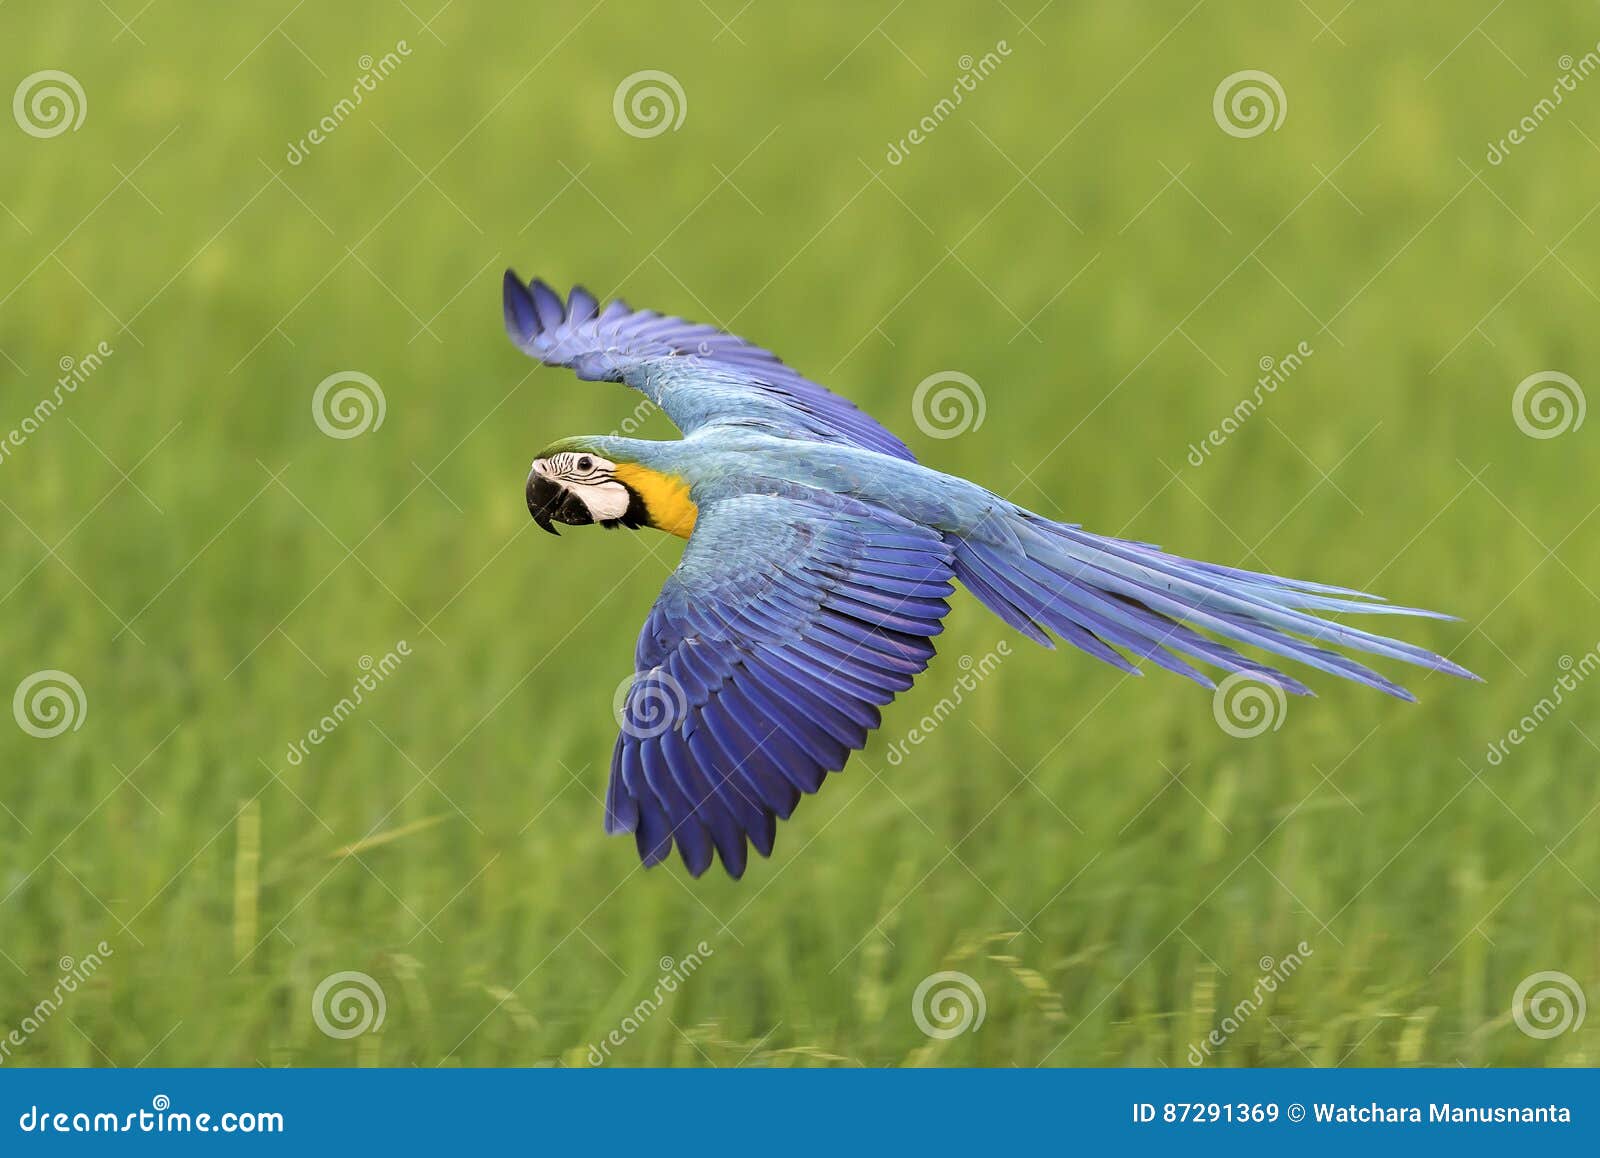 Beautiful Bird Flying on Nature Background Stock Image - Image of ...